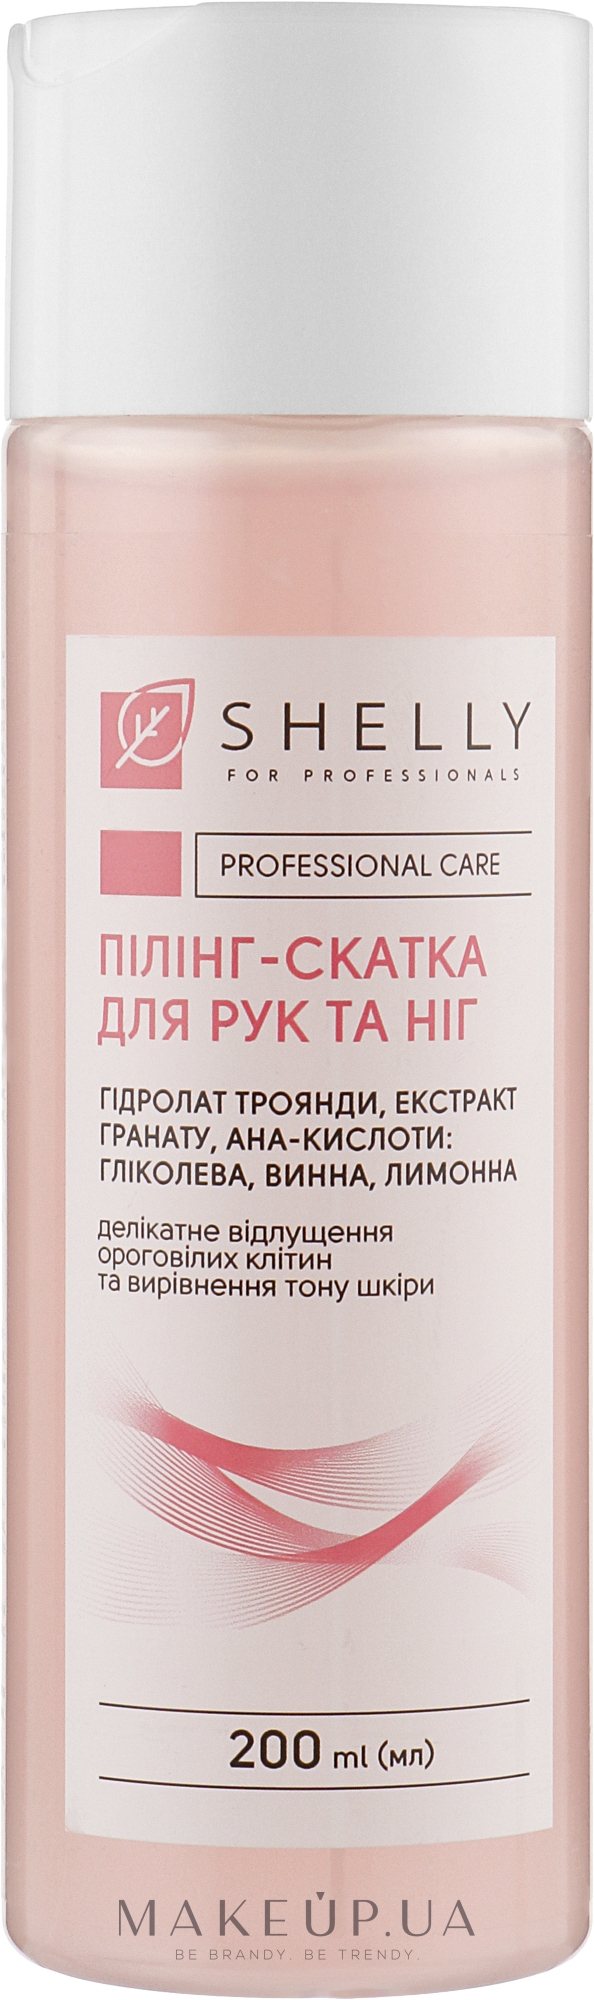 Пилинг-скатка для рук и ног с AHA-кислотами, гидролатом розы и экстрактом граната - Shelly Professional Care — фото 200ml